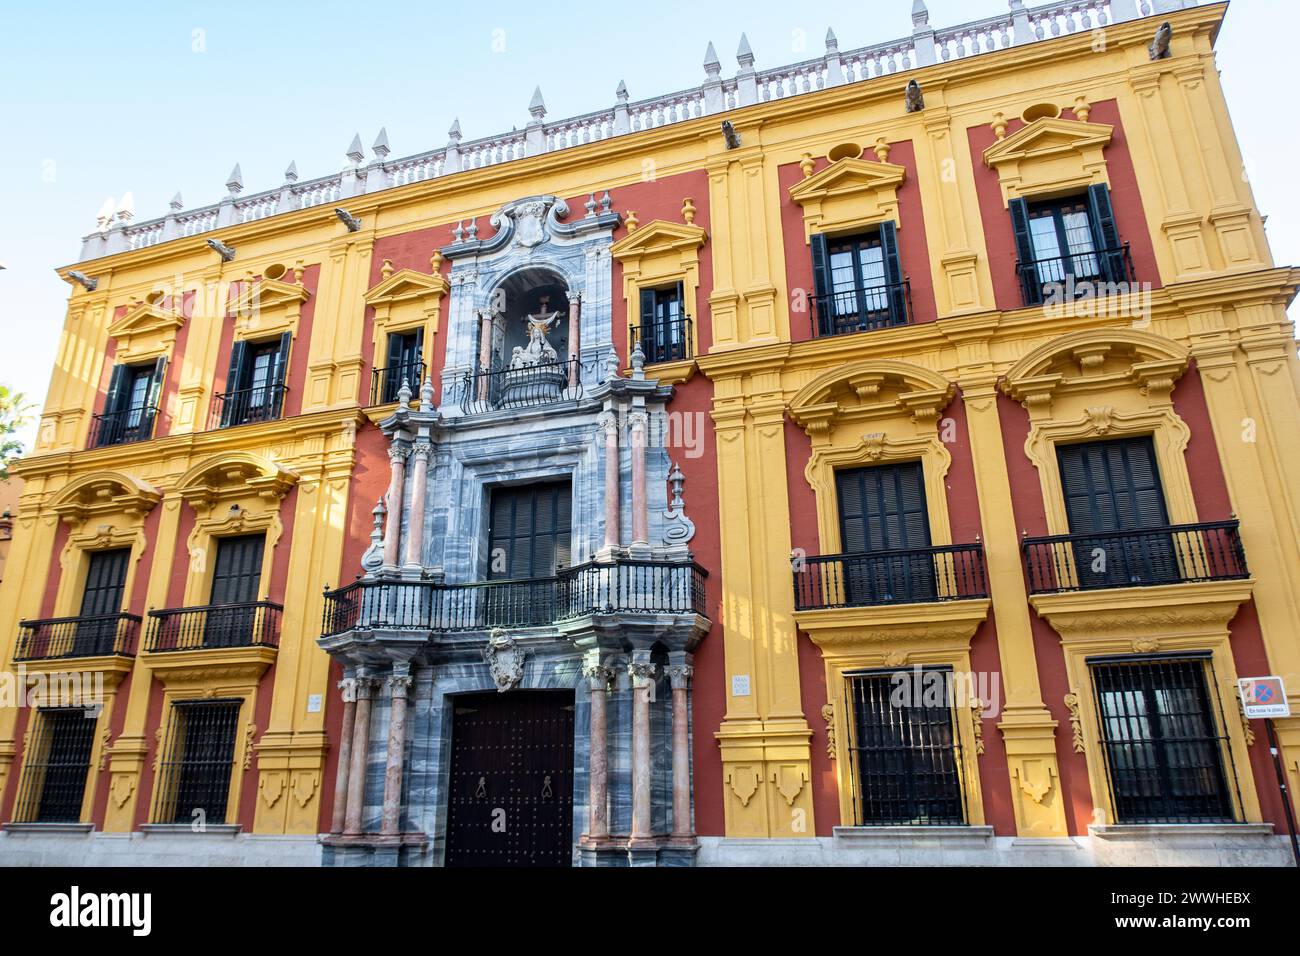 Palais épiscopal (Palacio épiscopal, Palais des évêques) sur la place Obispo, Malaga, Andalousie, Espagne avec une façade baroque espagnole colorée jaune et rouge. Banque D'Images